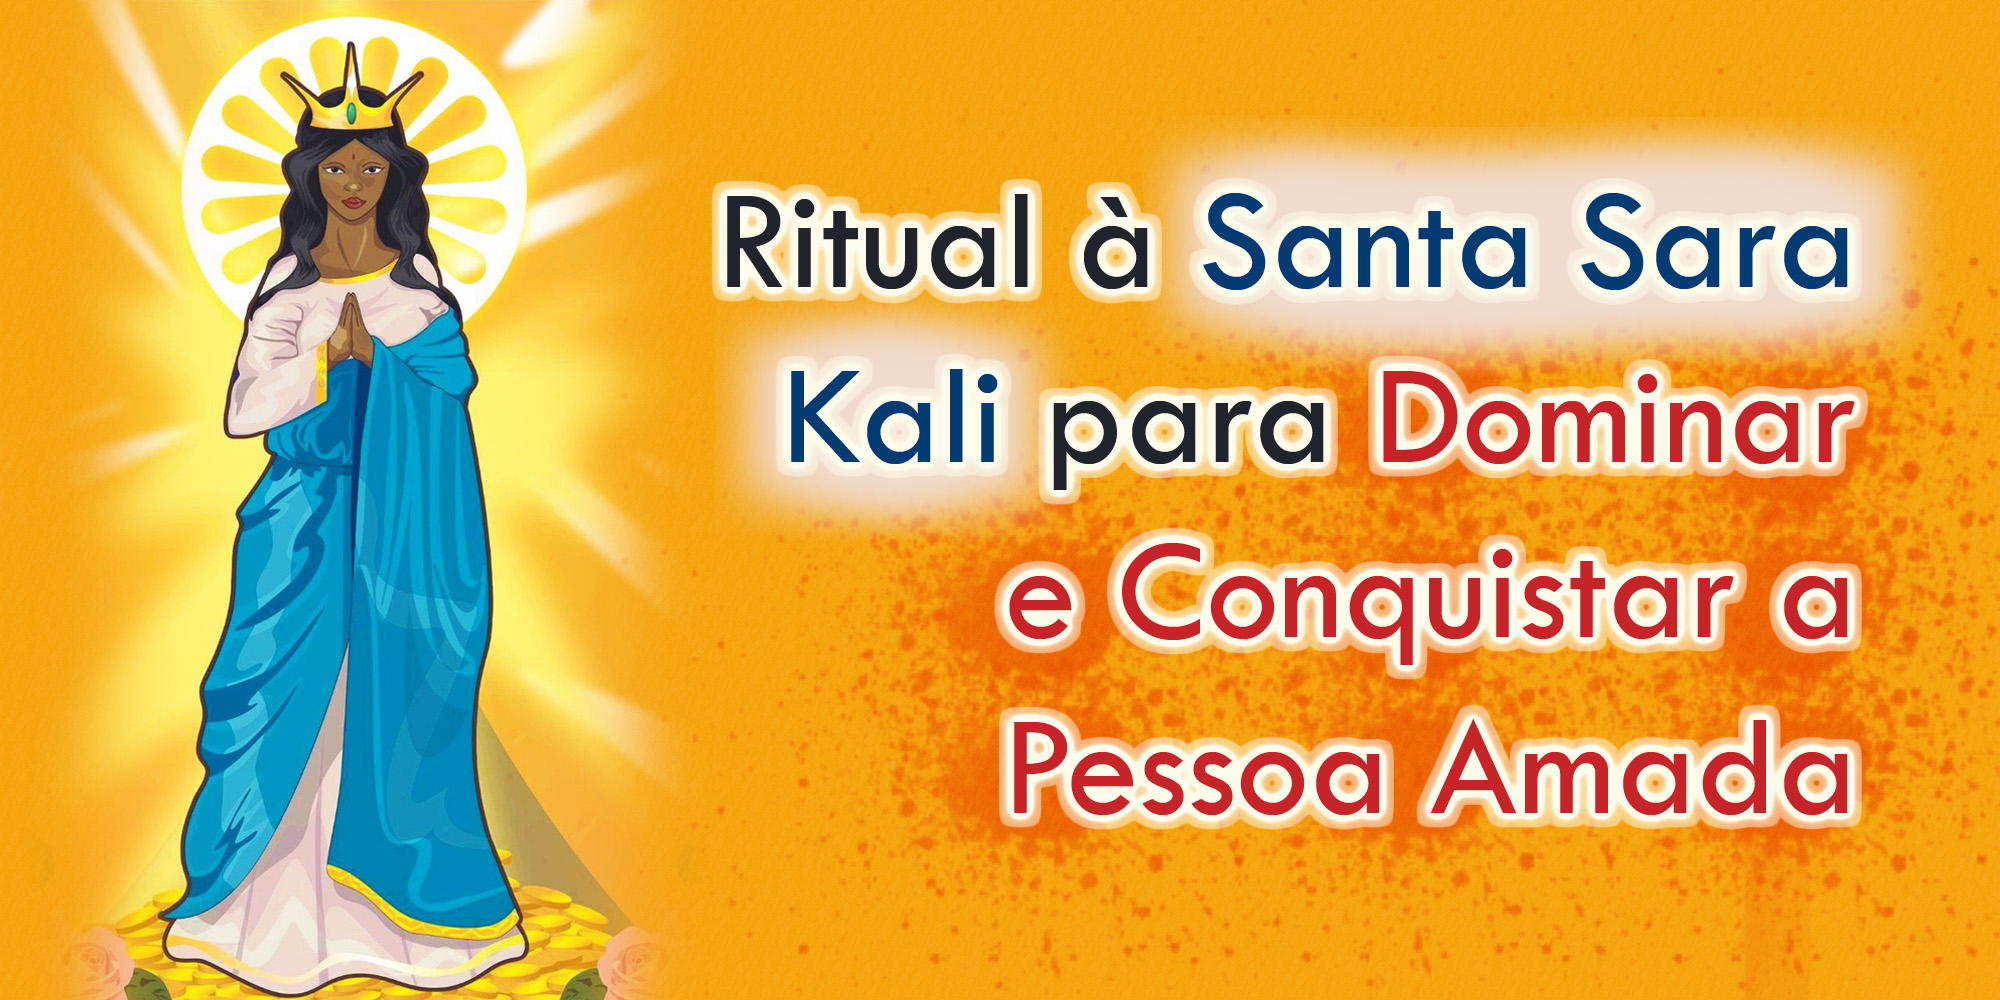 Ritual à Santa Sara Kali para Dominar e Conquistar a Pessoa Amada